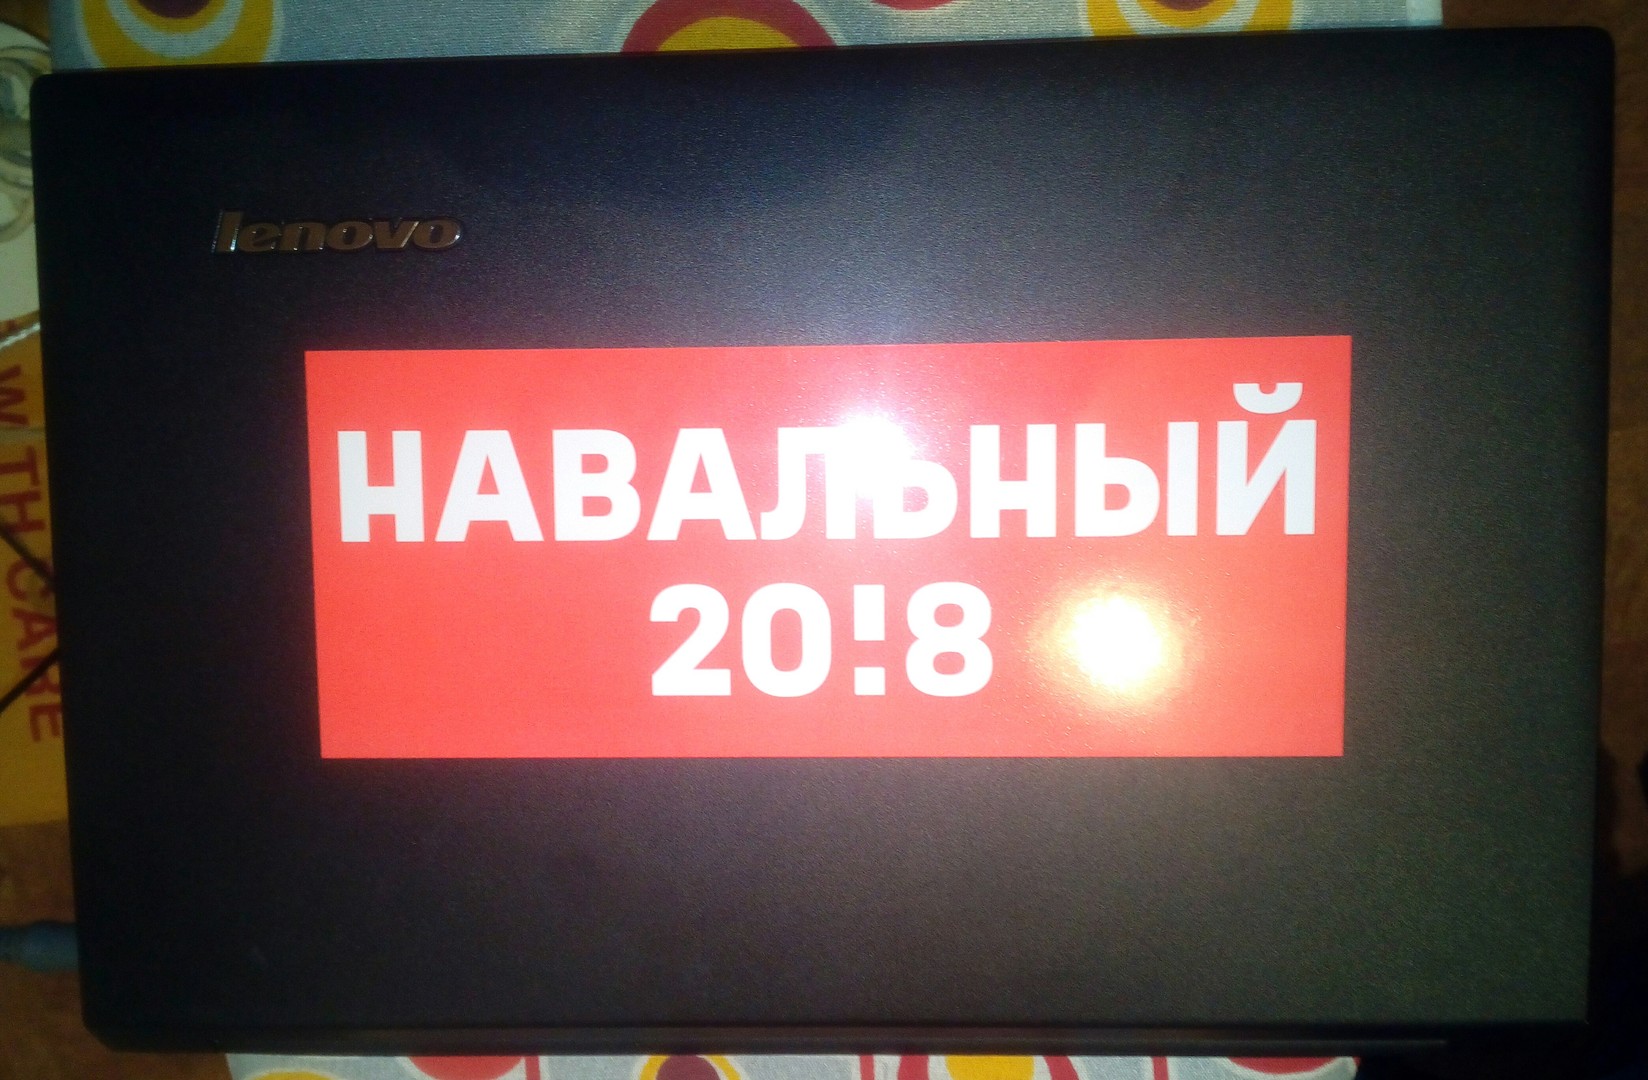 Навальный 20!8